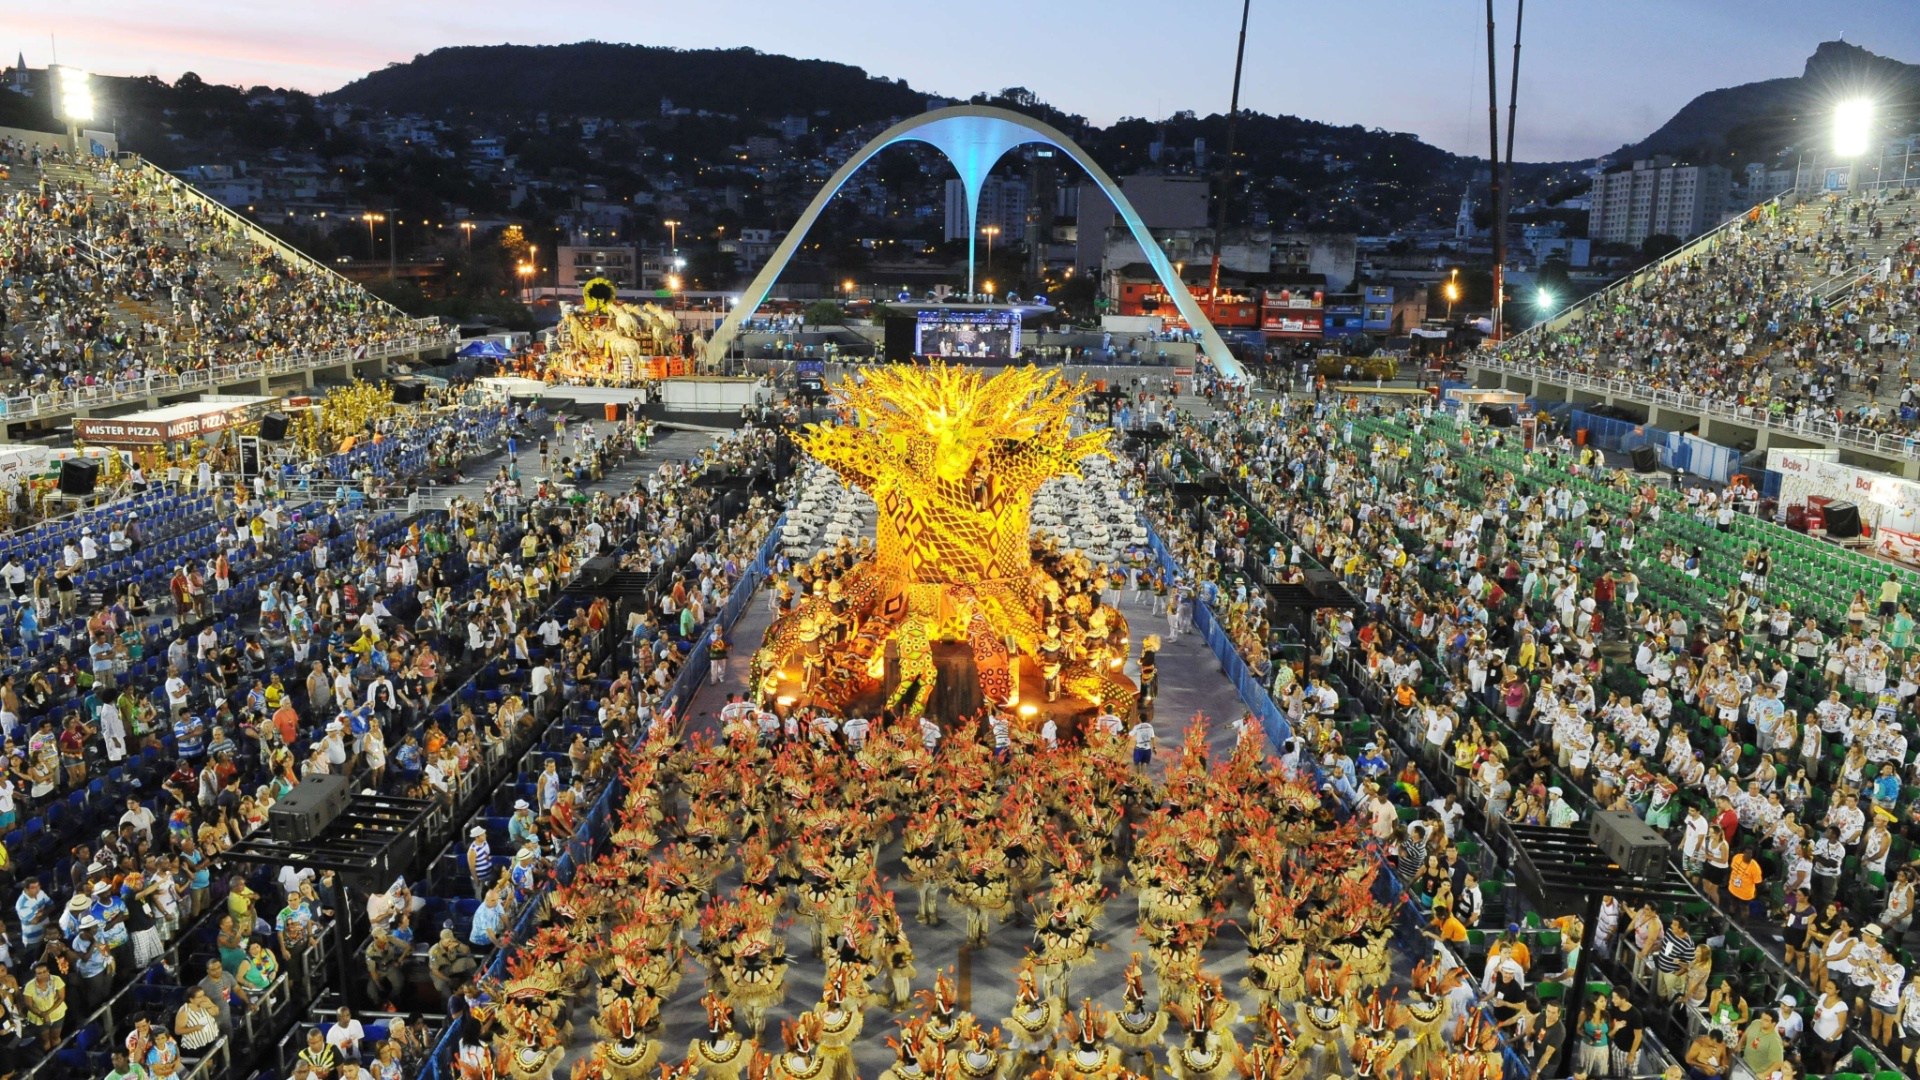 Cómo llegar al Sambódromo del Carnaval de Río de Janeiro